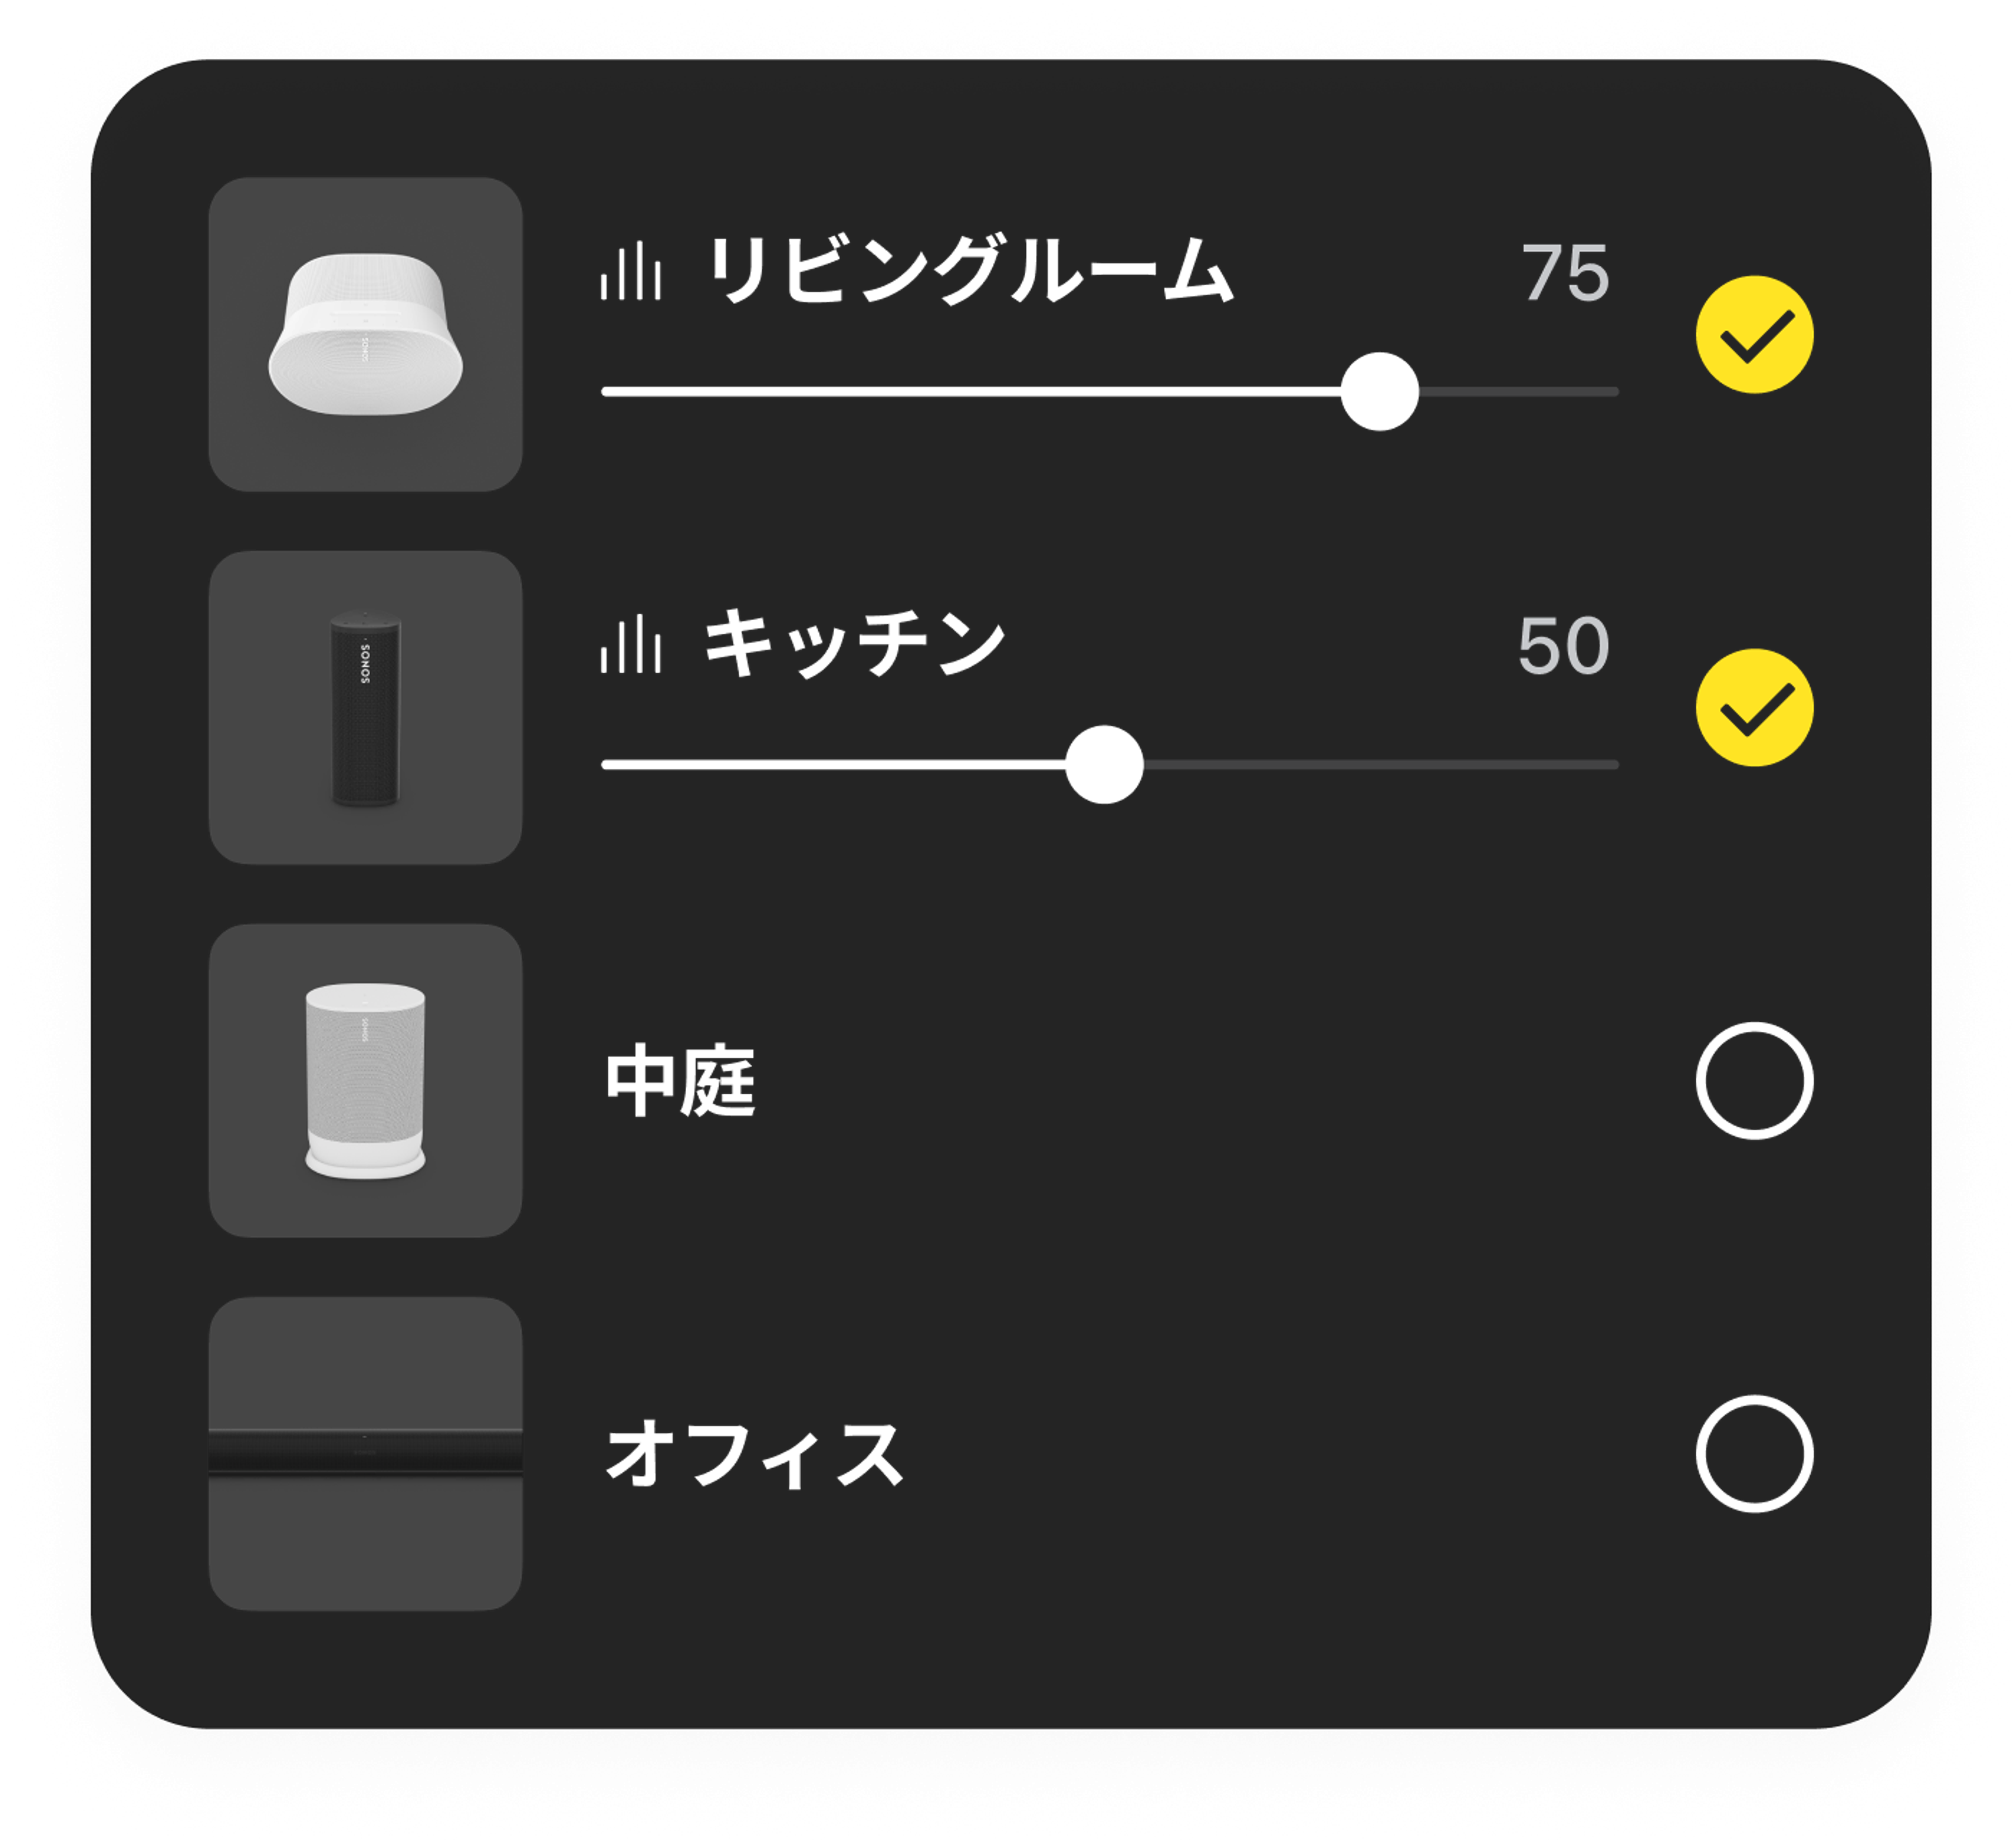 Sonosアプリでの部屋の音量調節の例